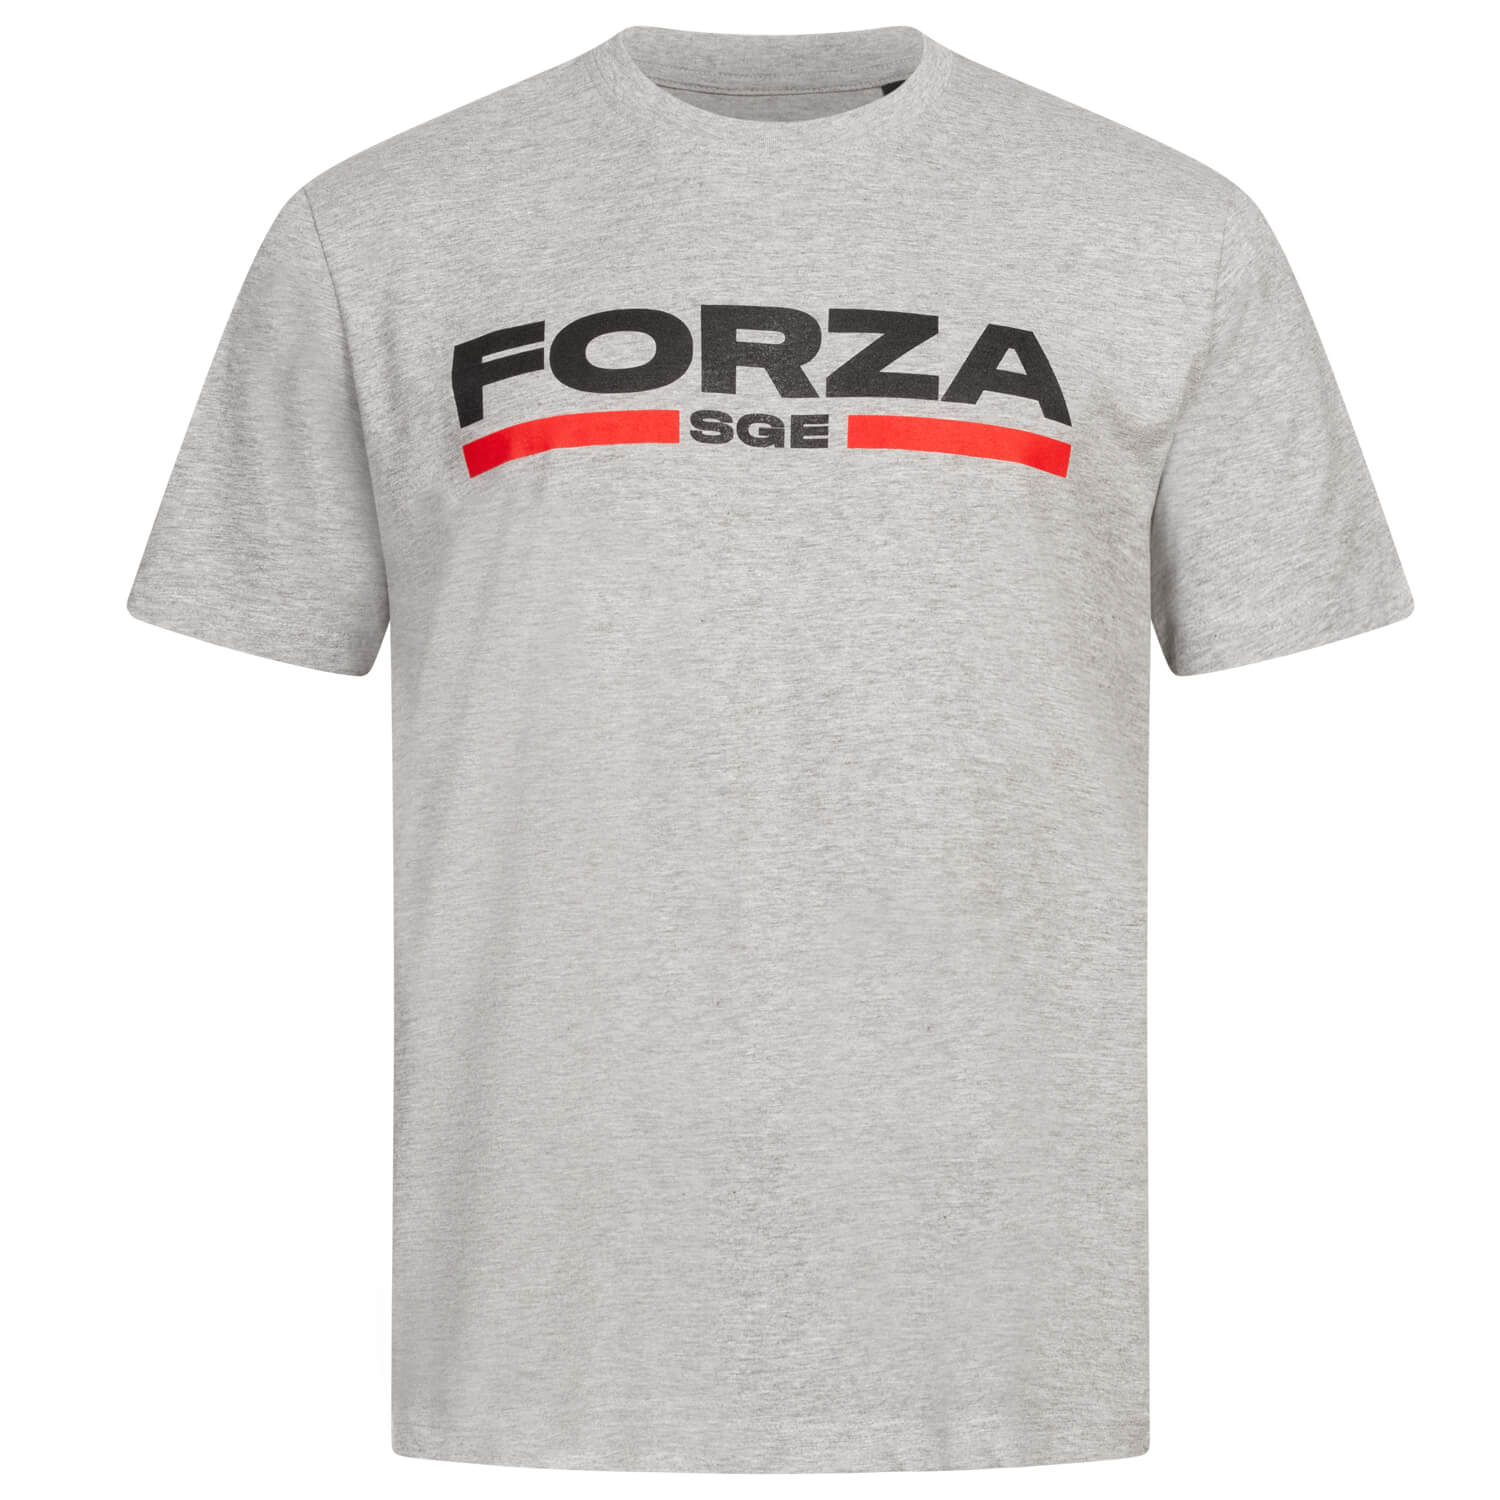 Bild 1: T-Shirt Forza SGE